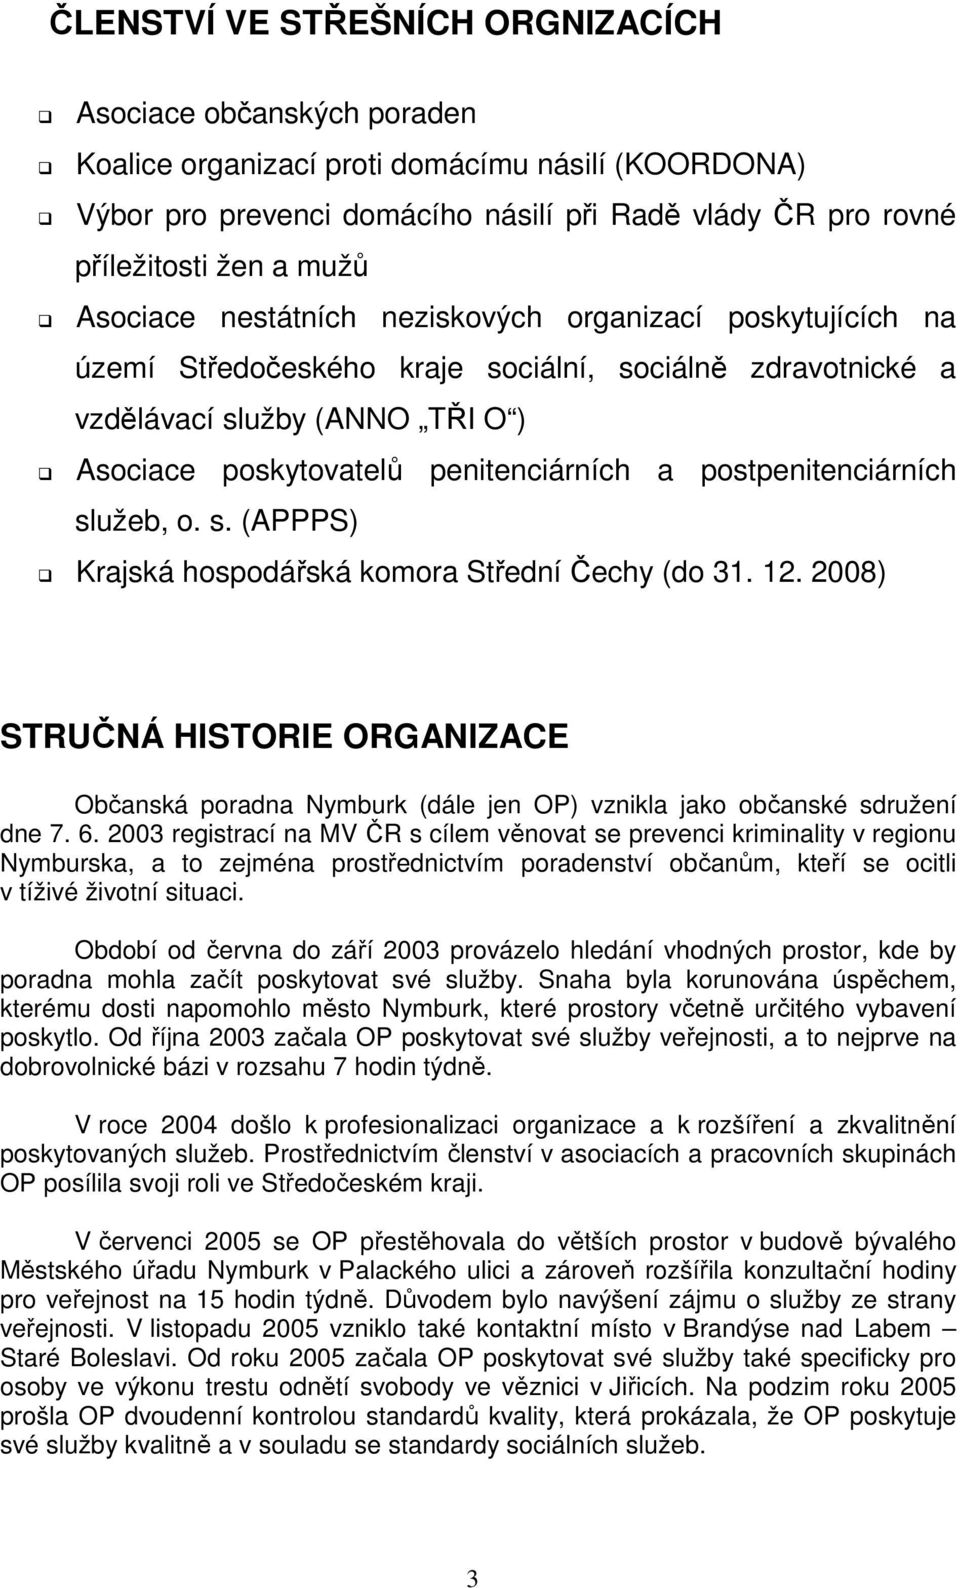 postpenitenciárních služeb, o. s. (APPPS) Krajská hospodářská komora Střední Čechy (do 31. 12.